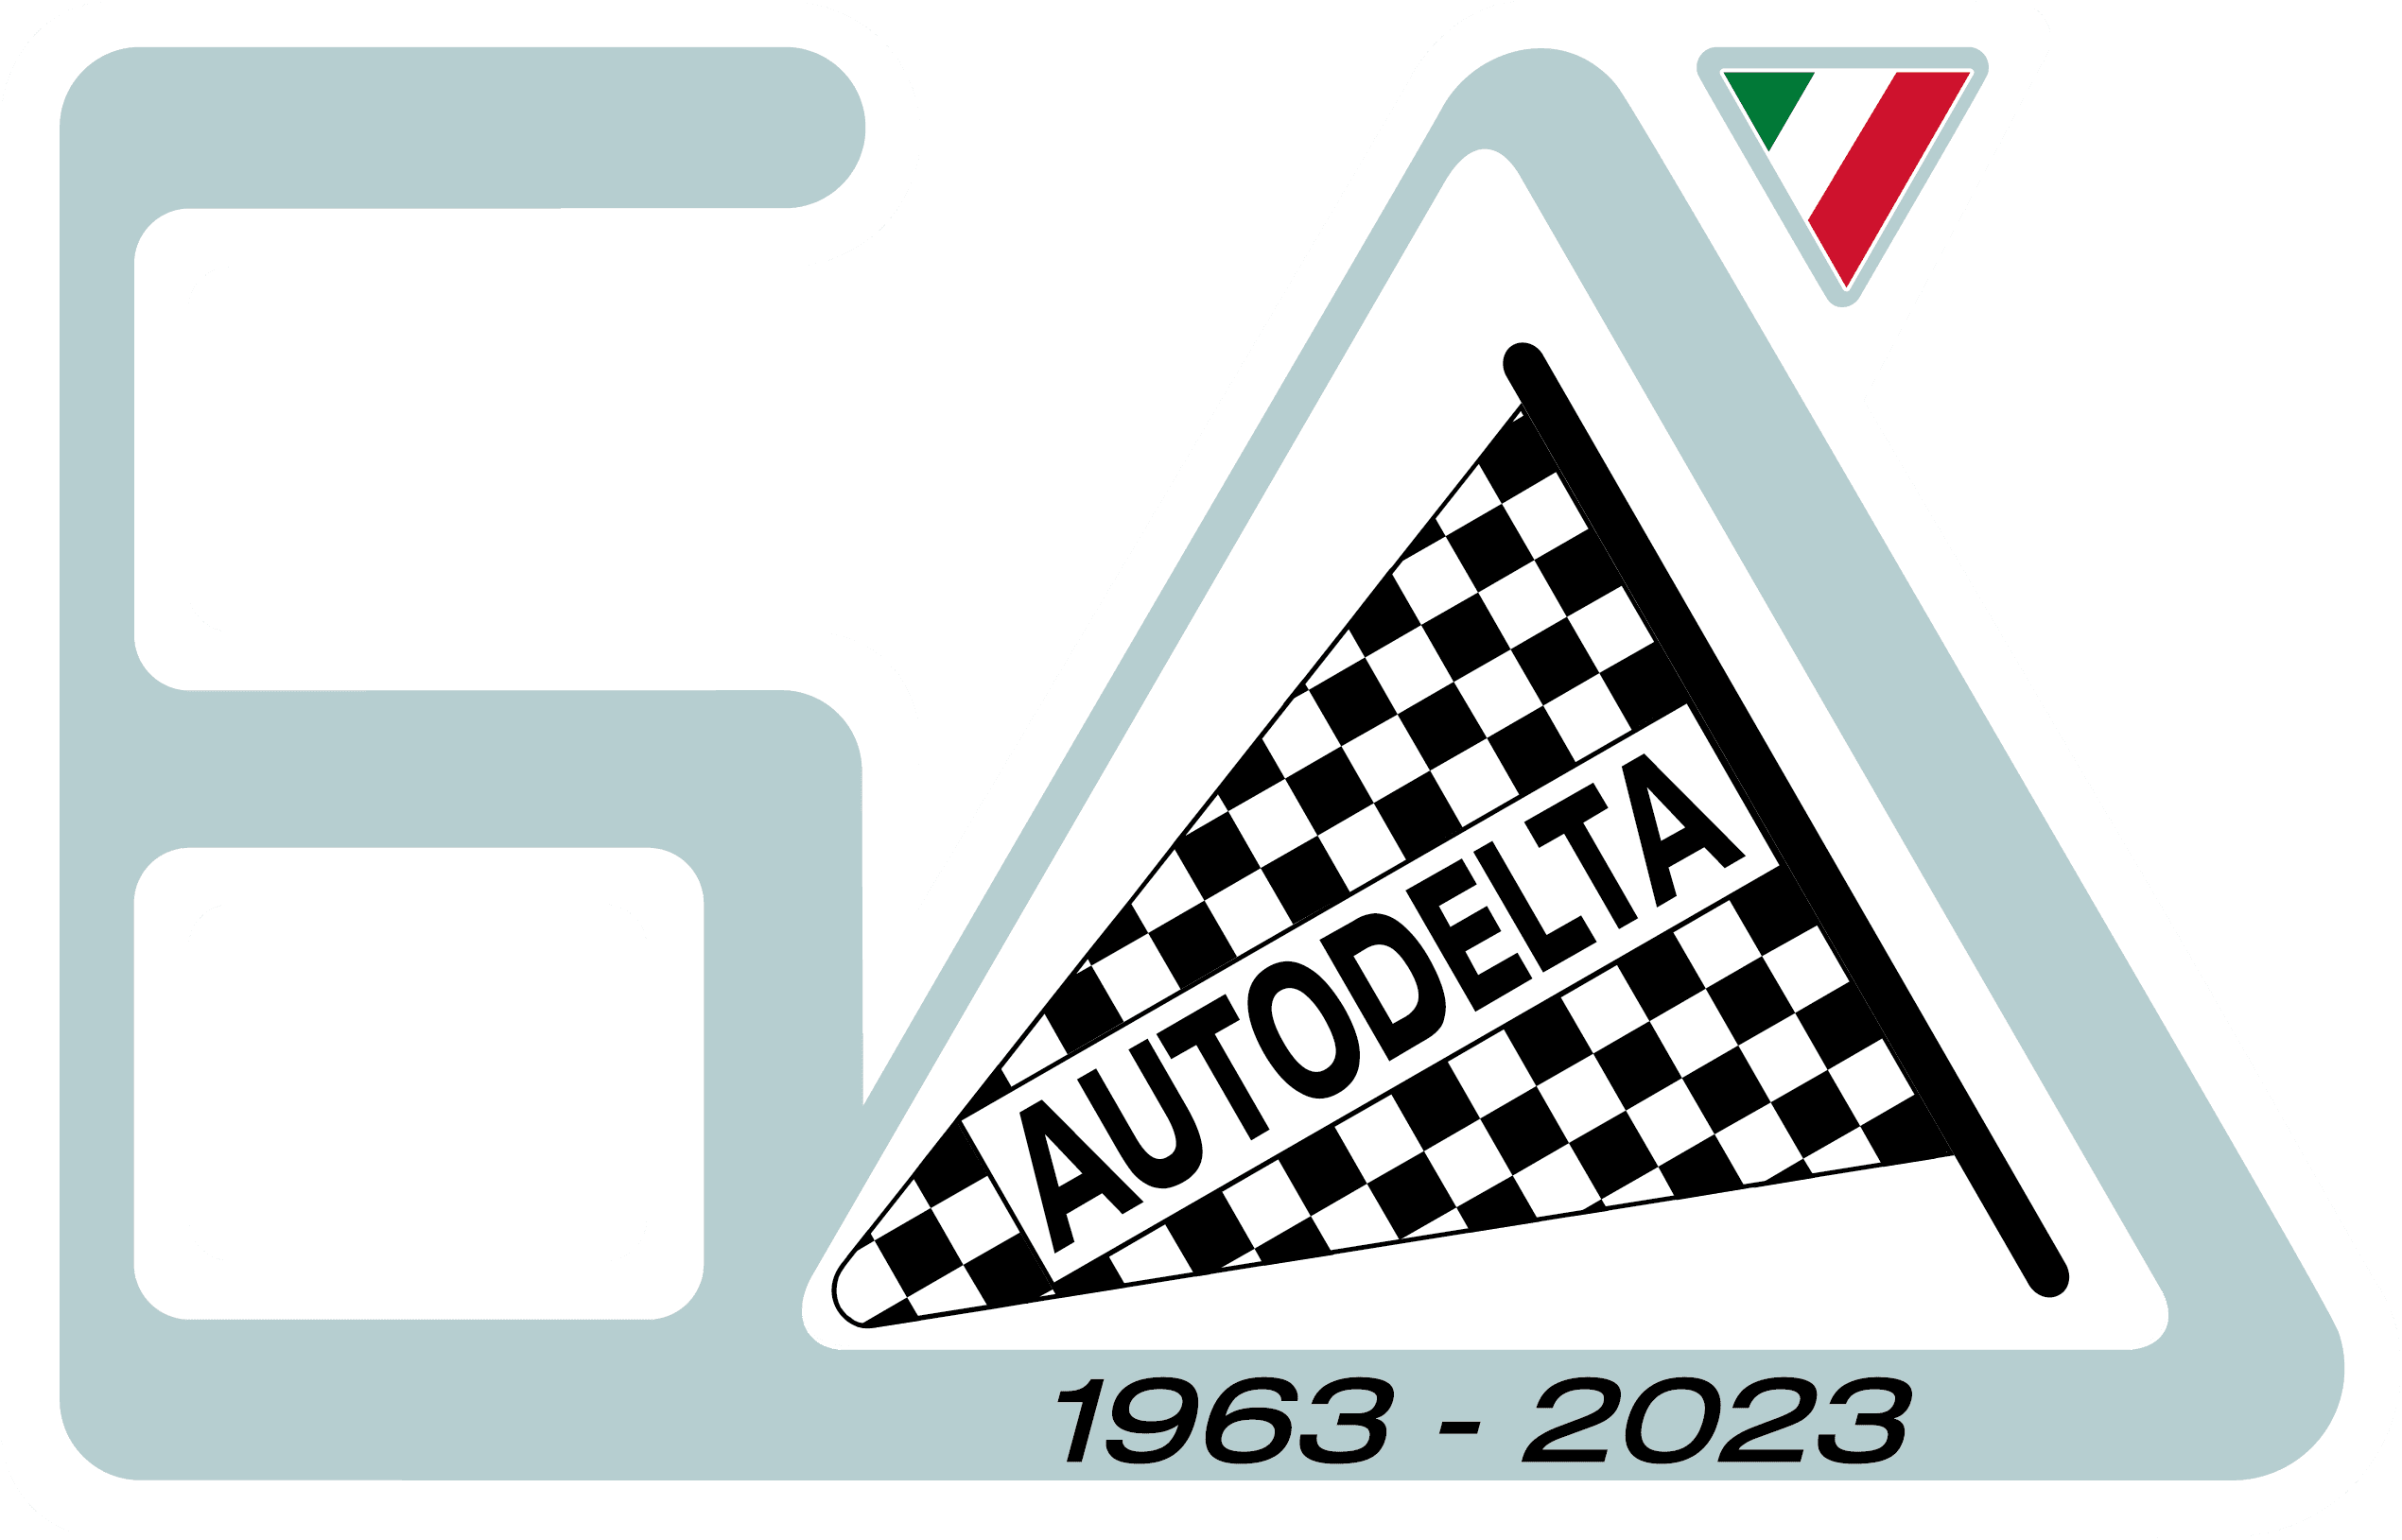 Autodelta anniversary logo